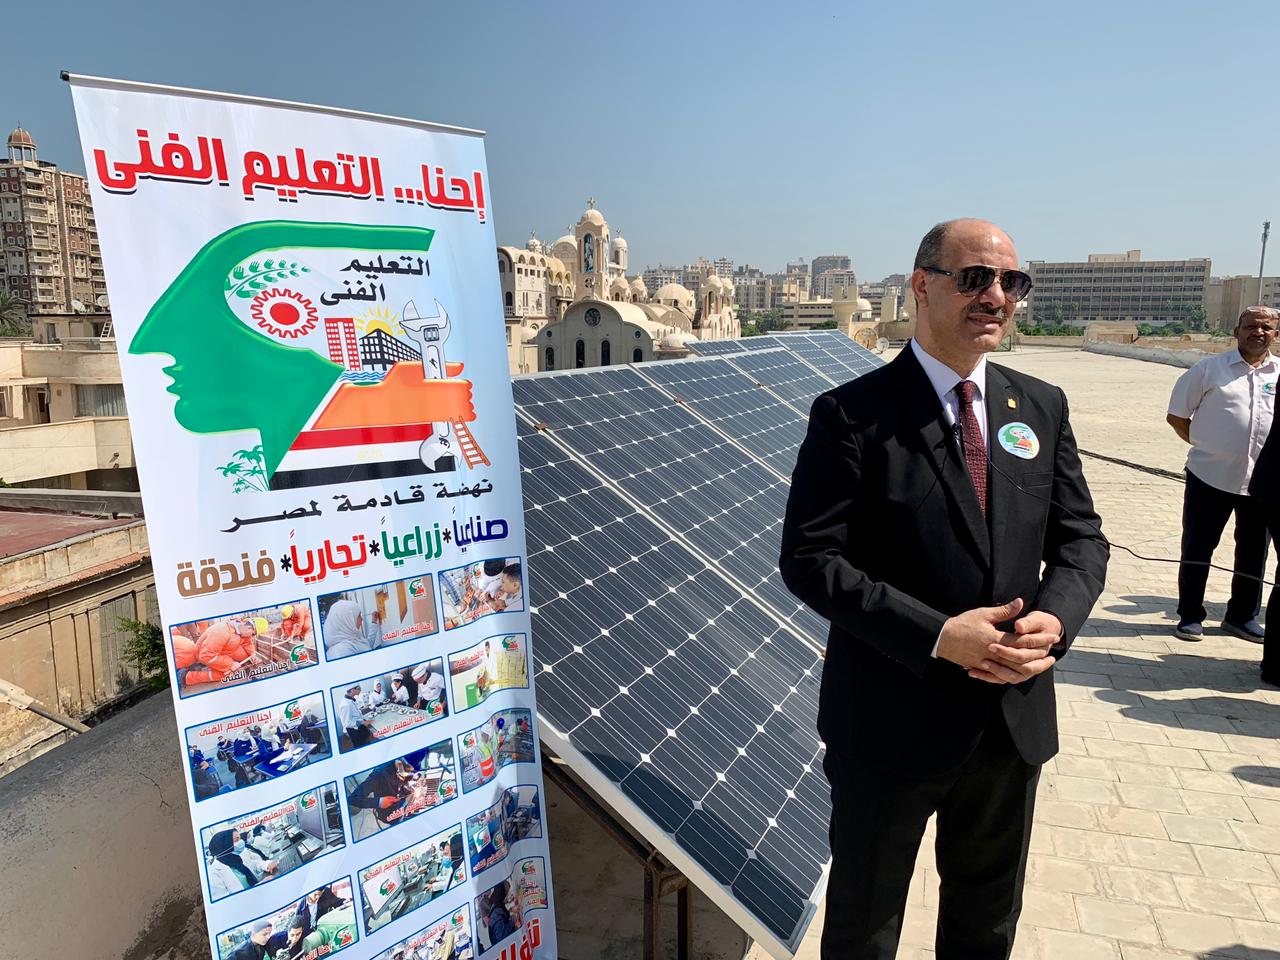 وكيل تعليم الإسكندرية يتفقد مشروع الطاقة الشمسية بمدرسة محمد علي الزخرفية |  صور - بوابة الأهرام